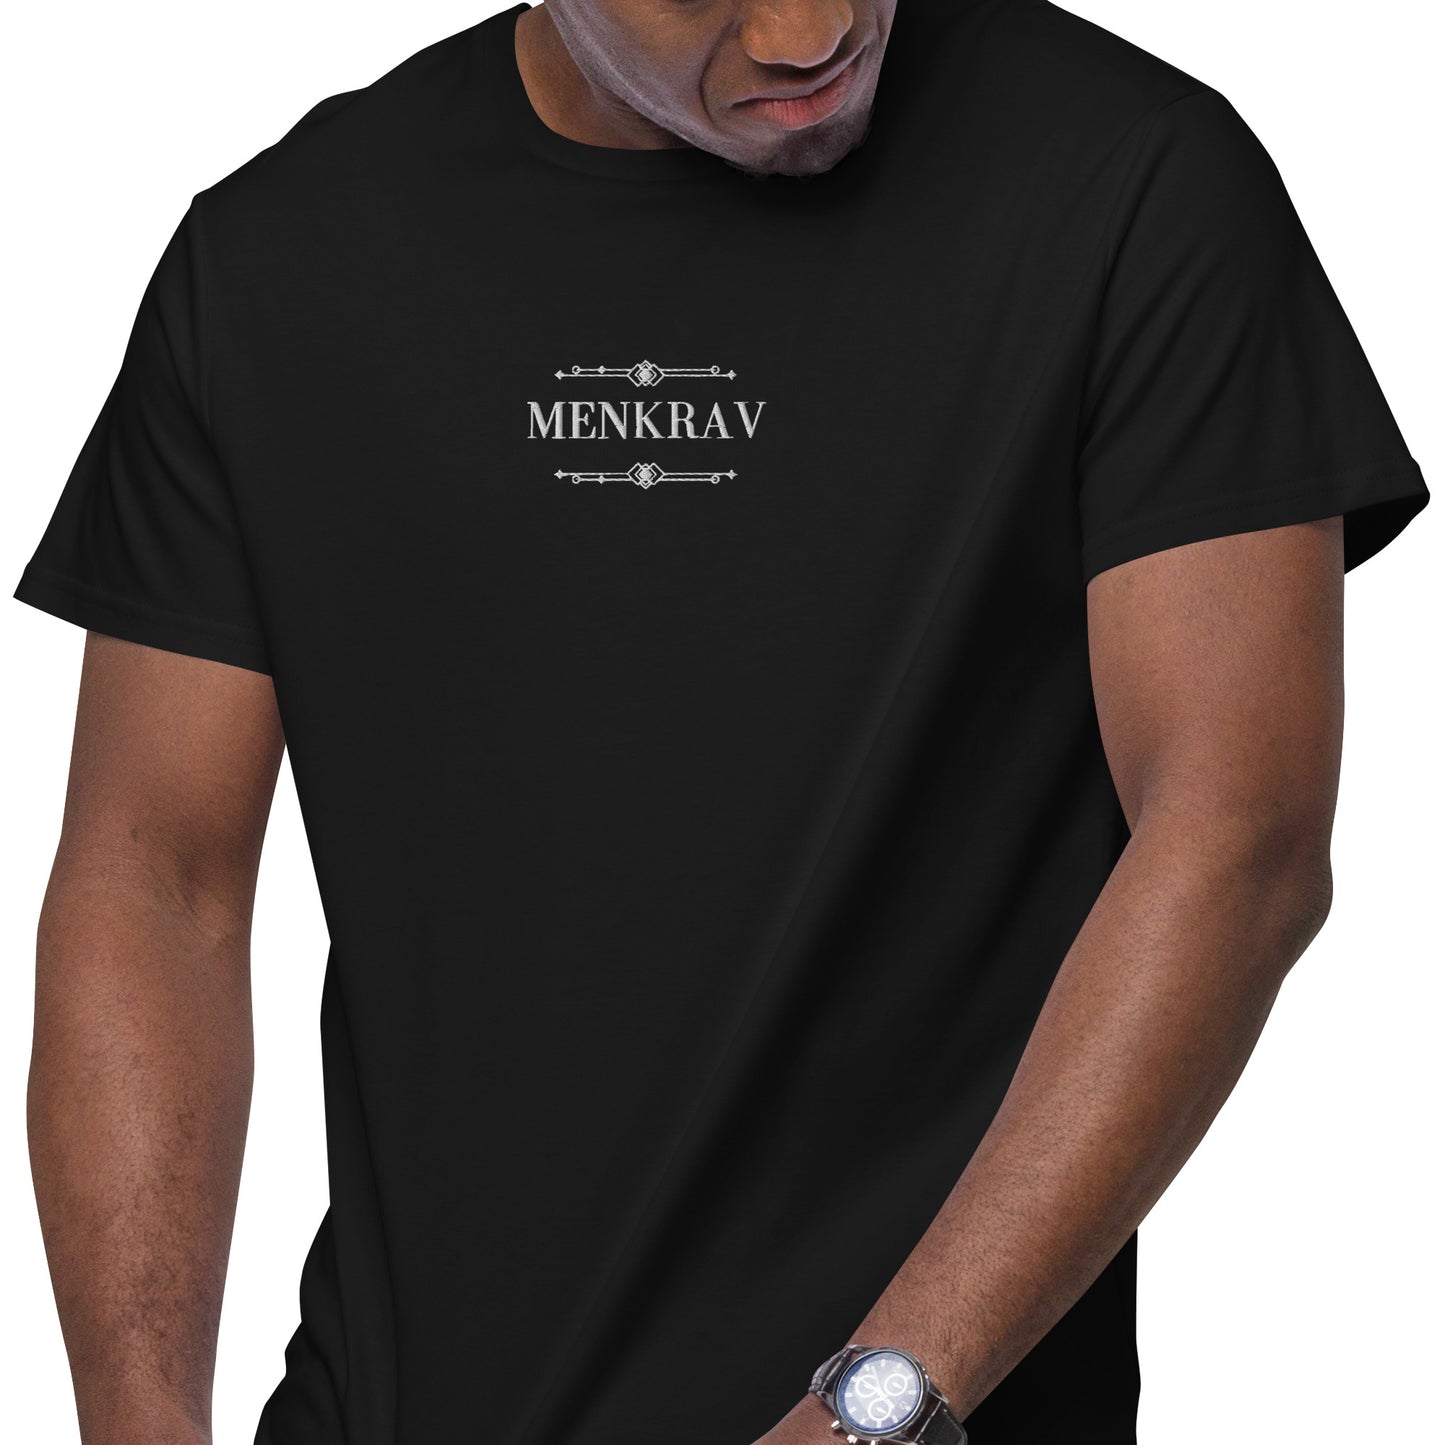 Menkrav Initiate black t-shirt